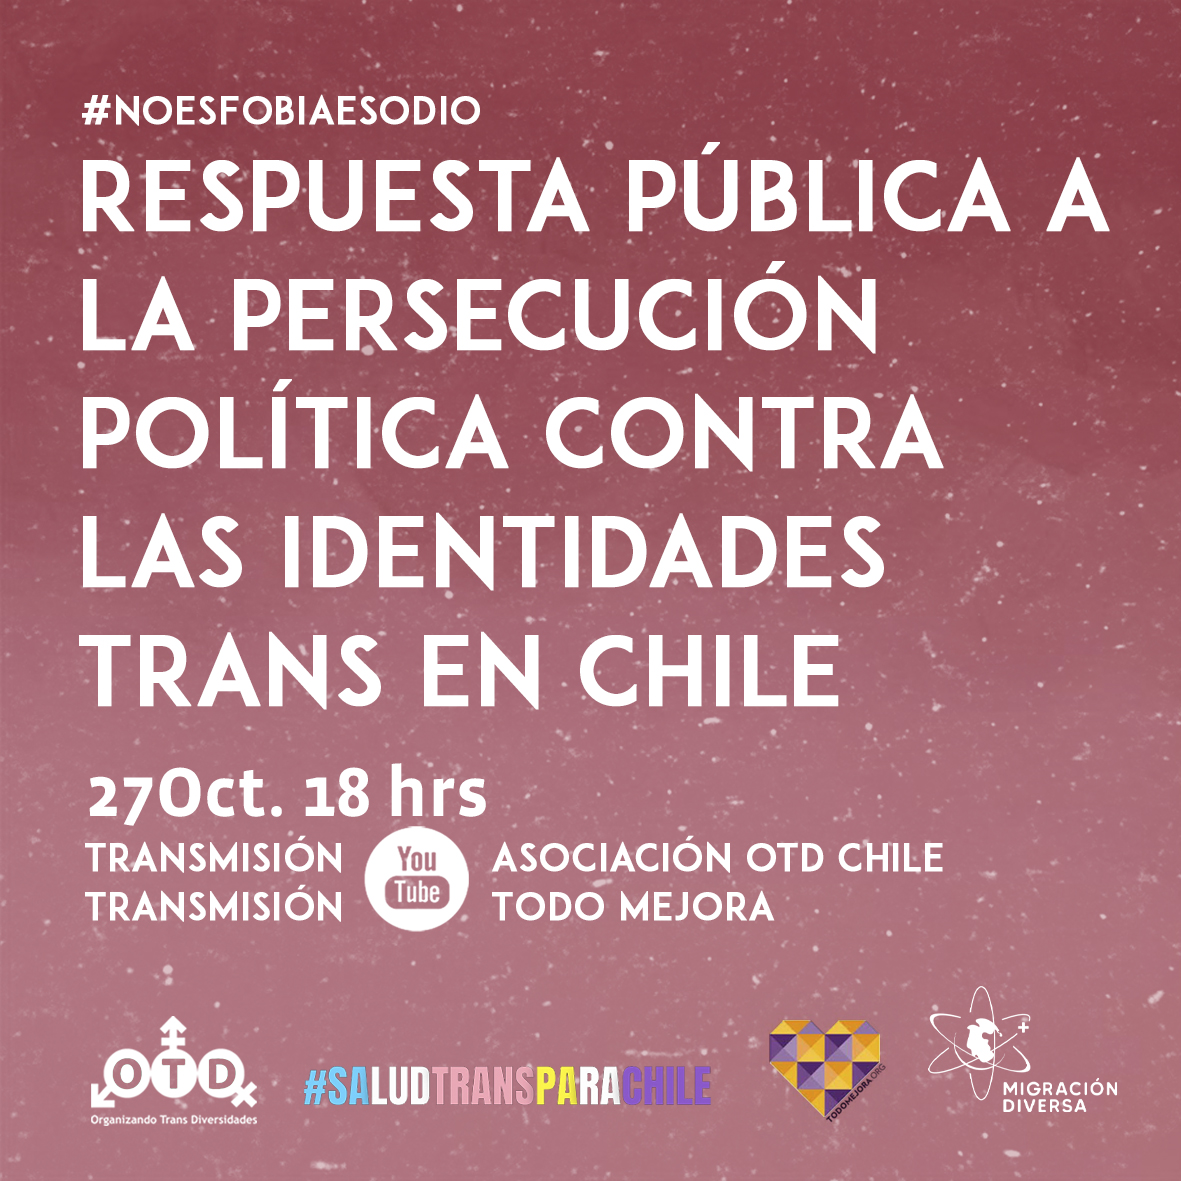 Respuesta pública a la persecución política contra las identidades trans en Chile